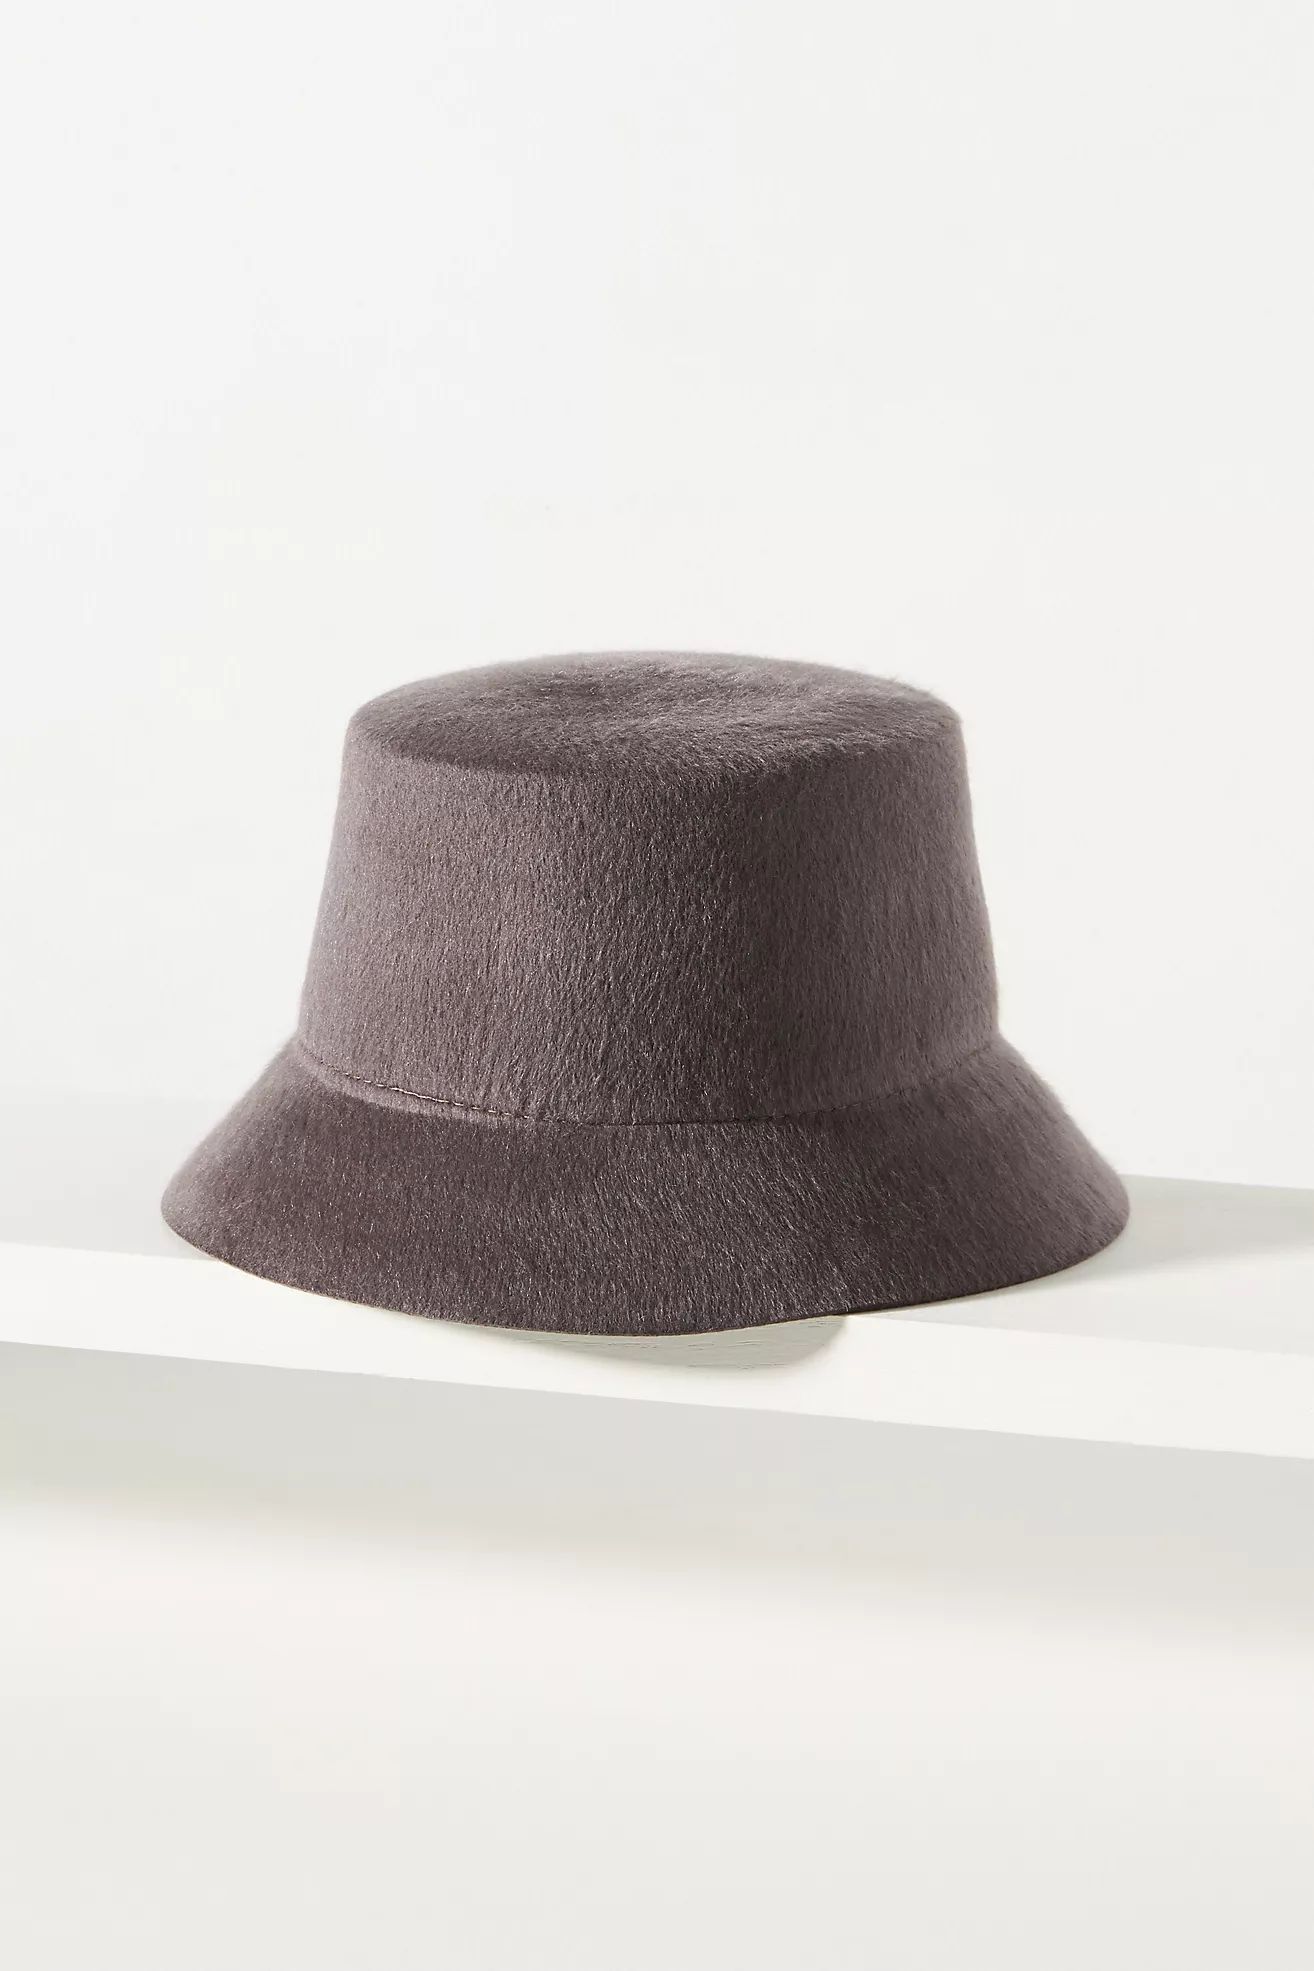 Wyeth Felt Bucket Hat | Anthropologie (US)